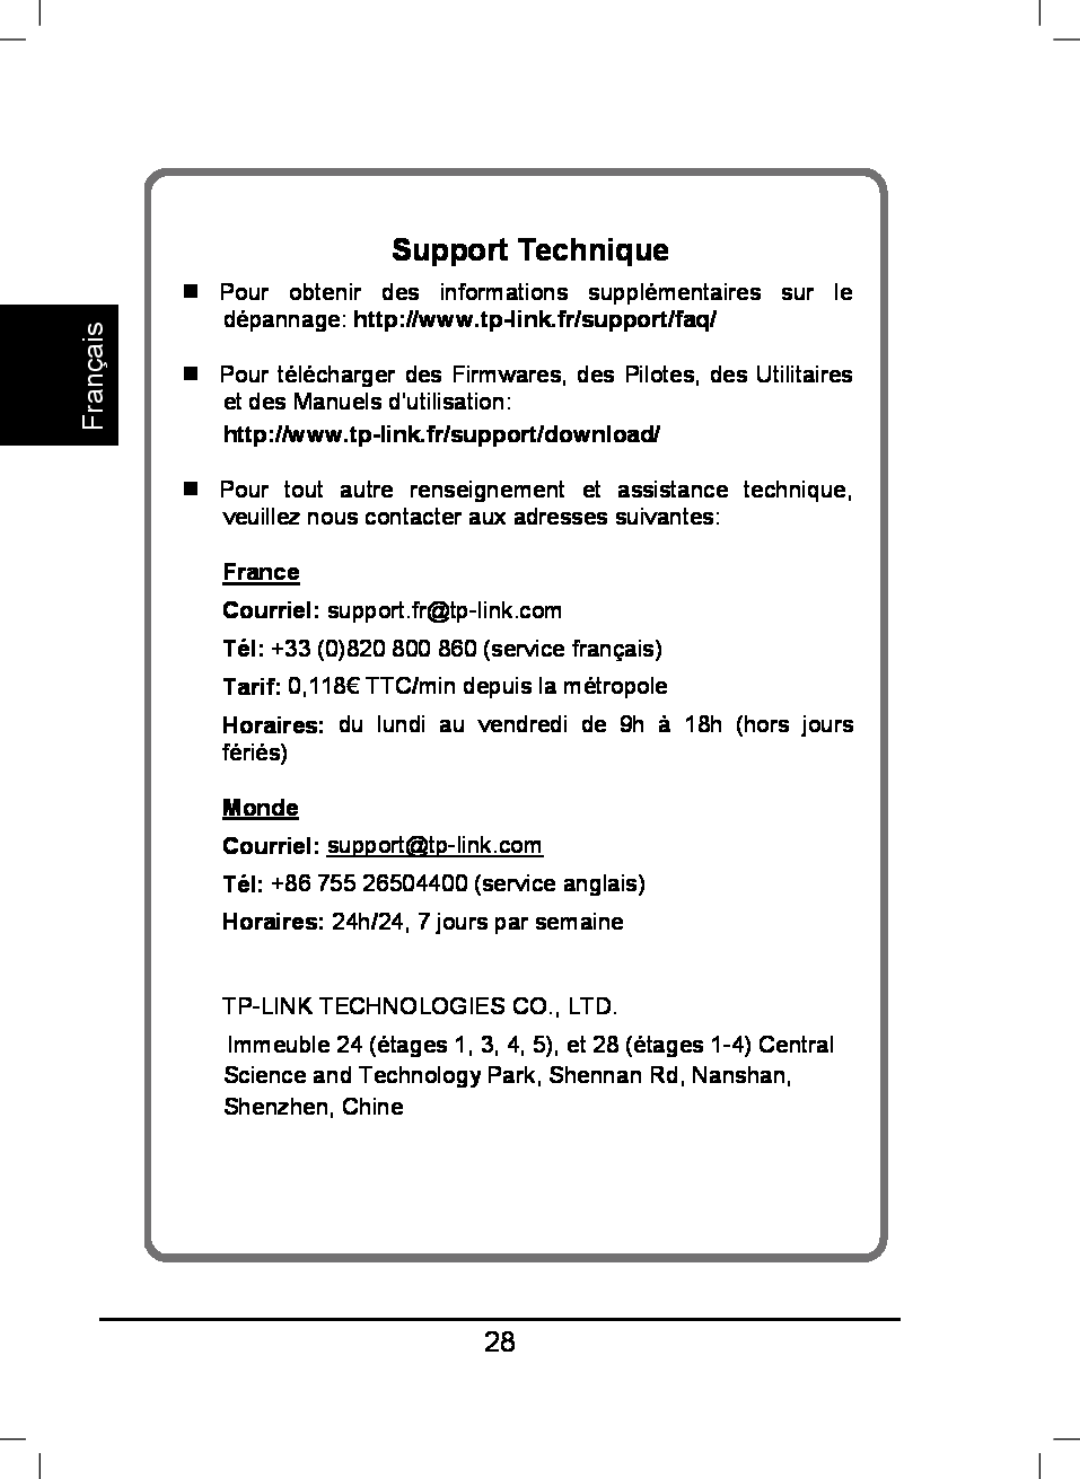 TP-Link TL-WA850RE manual Support Technique, France, Monde, Français 